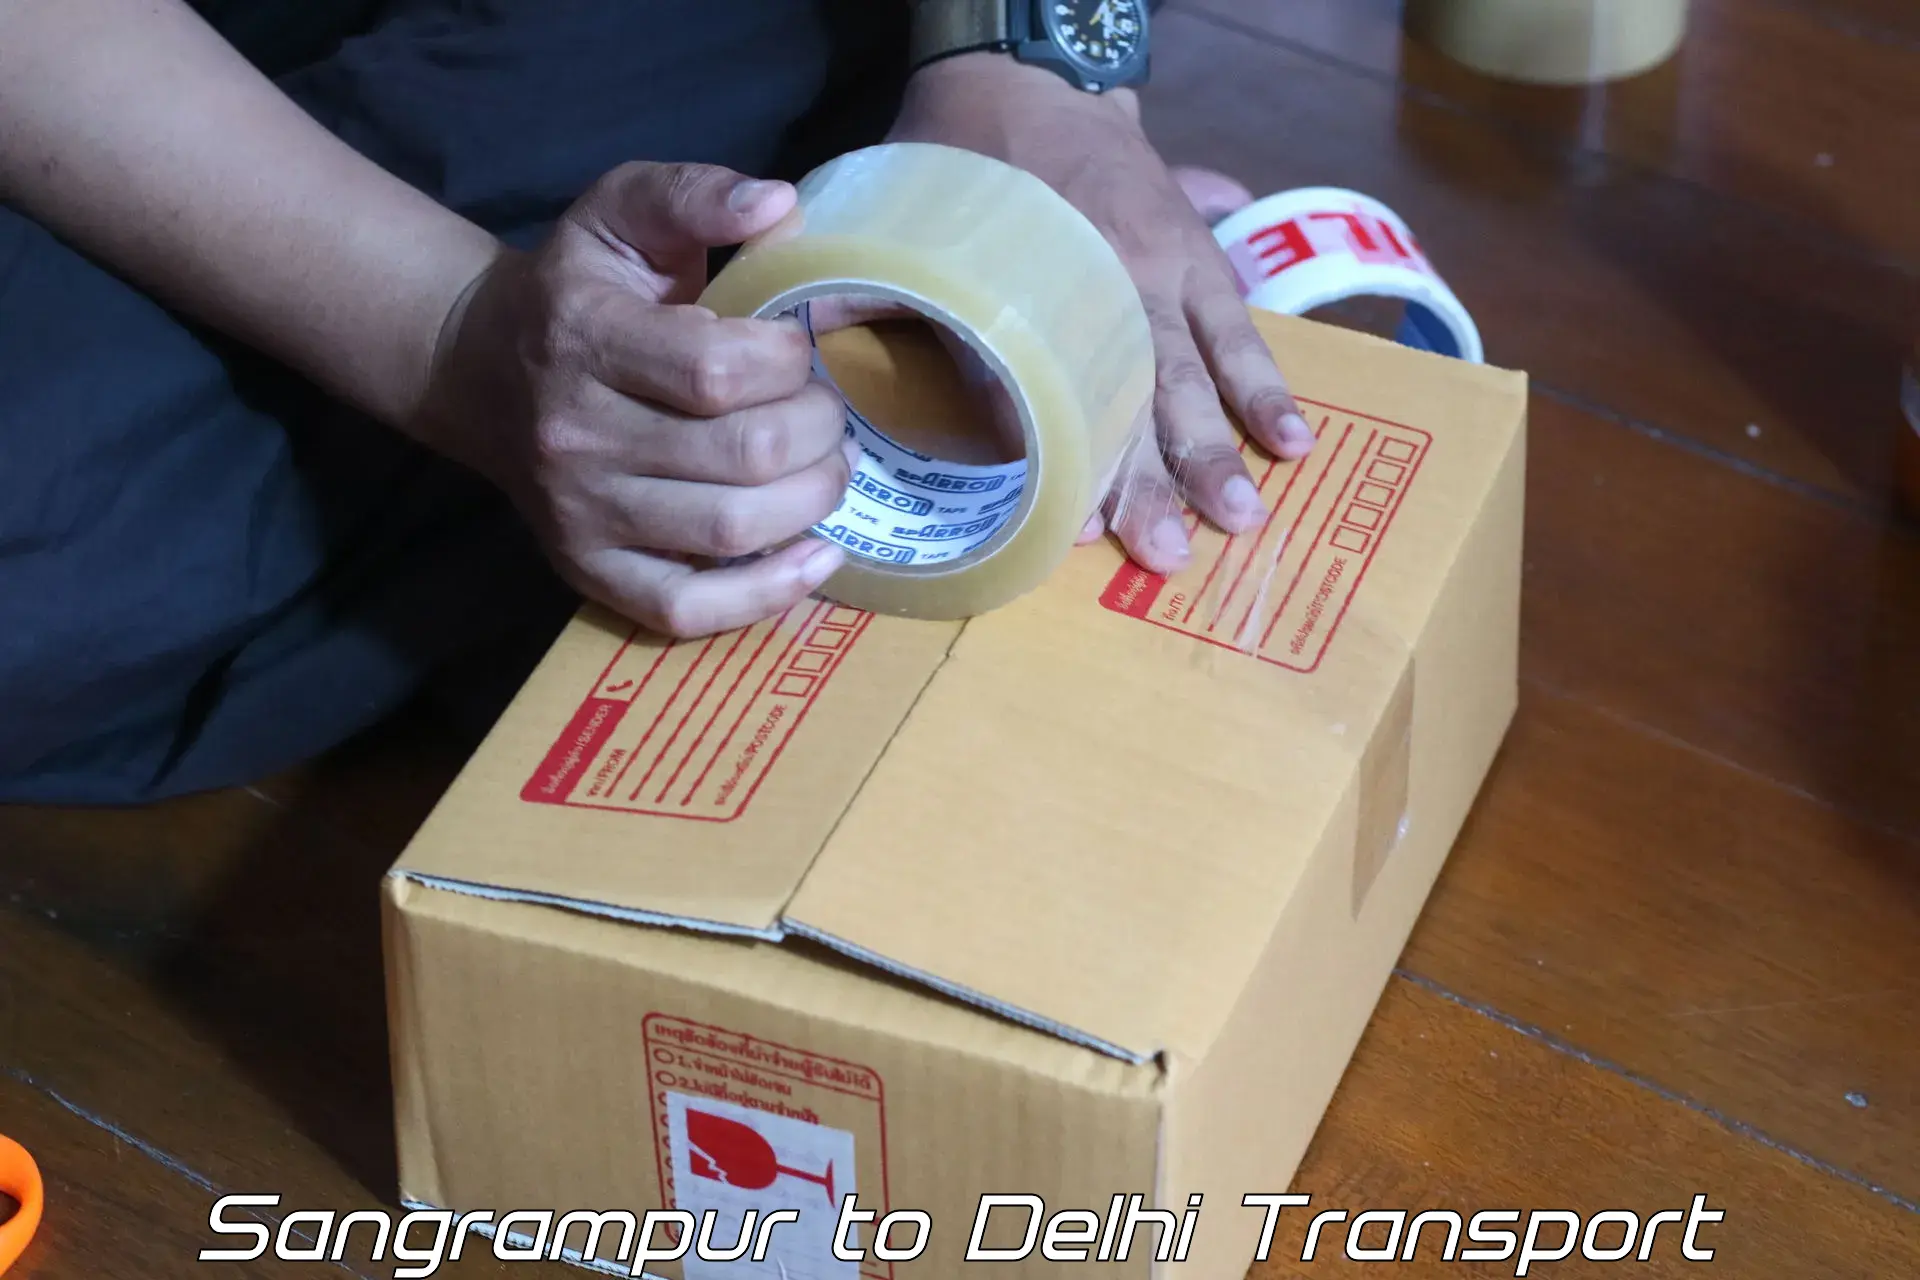 Air freight transport services Sangrampur to Jamia Millia Islamia New Delhi